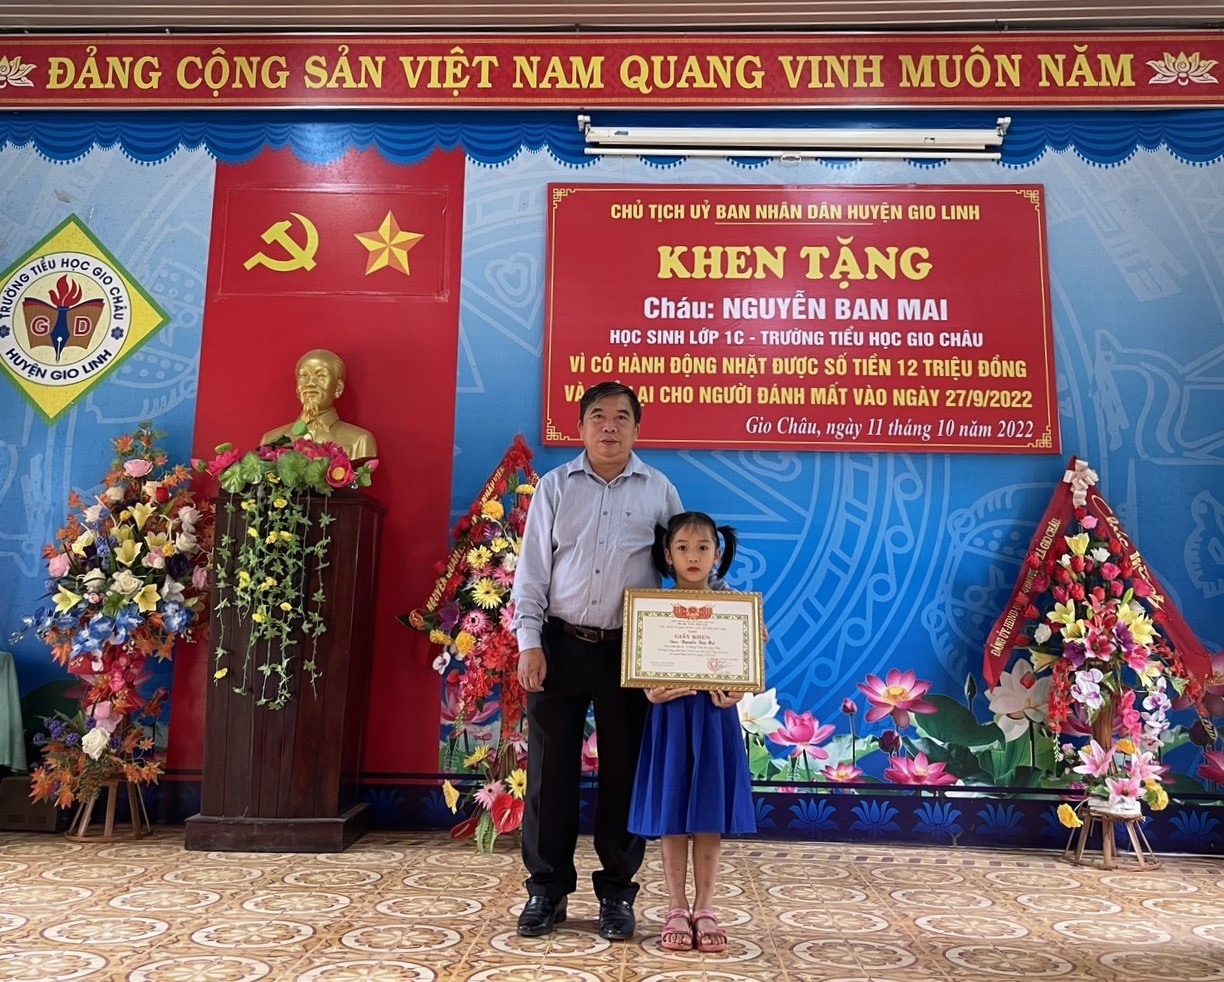 Trao giấy khen của UBND huyện cho em Nguyễn Ban Mai vì có hành động đẹp nhặt của rơi trả lại người mất - Ảnh: CTV